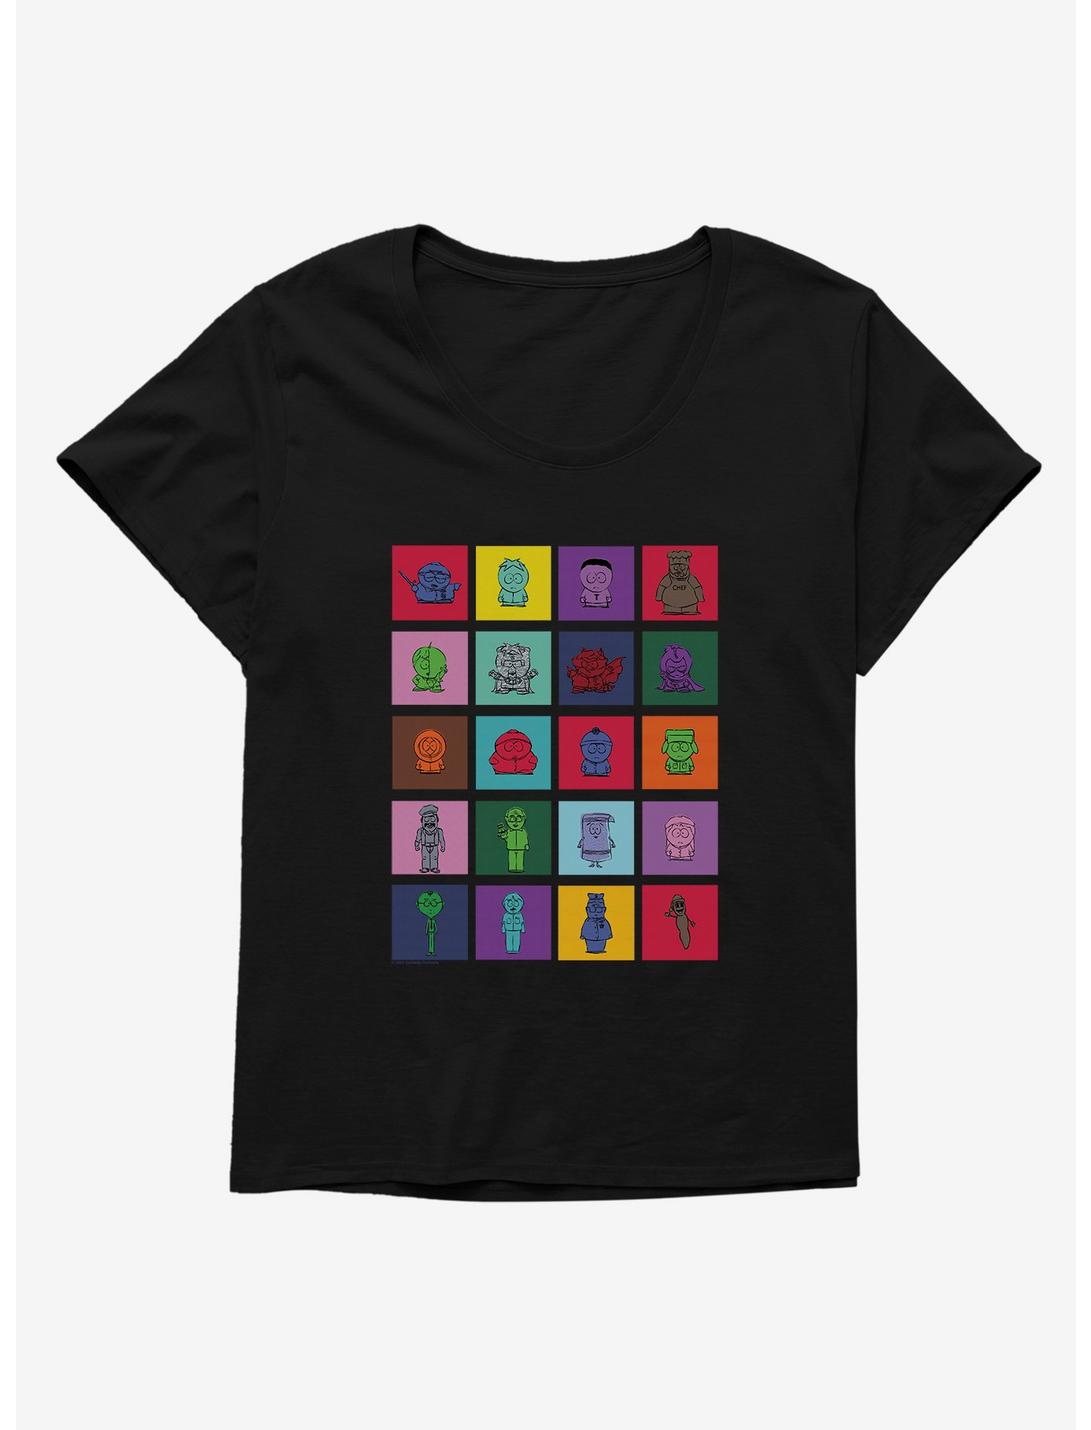 South Park Grid Girls T-Shirt Plus Size, , hi-res